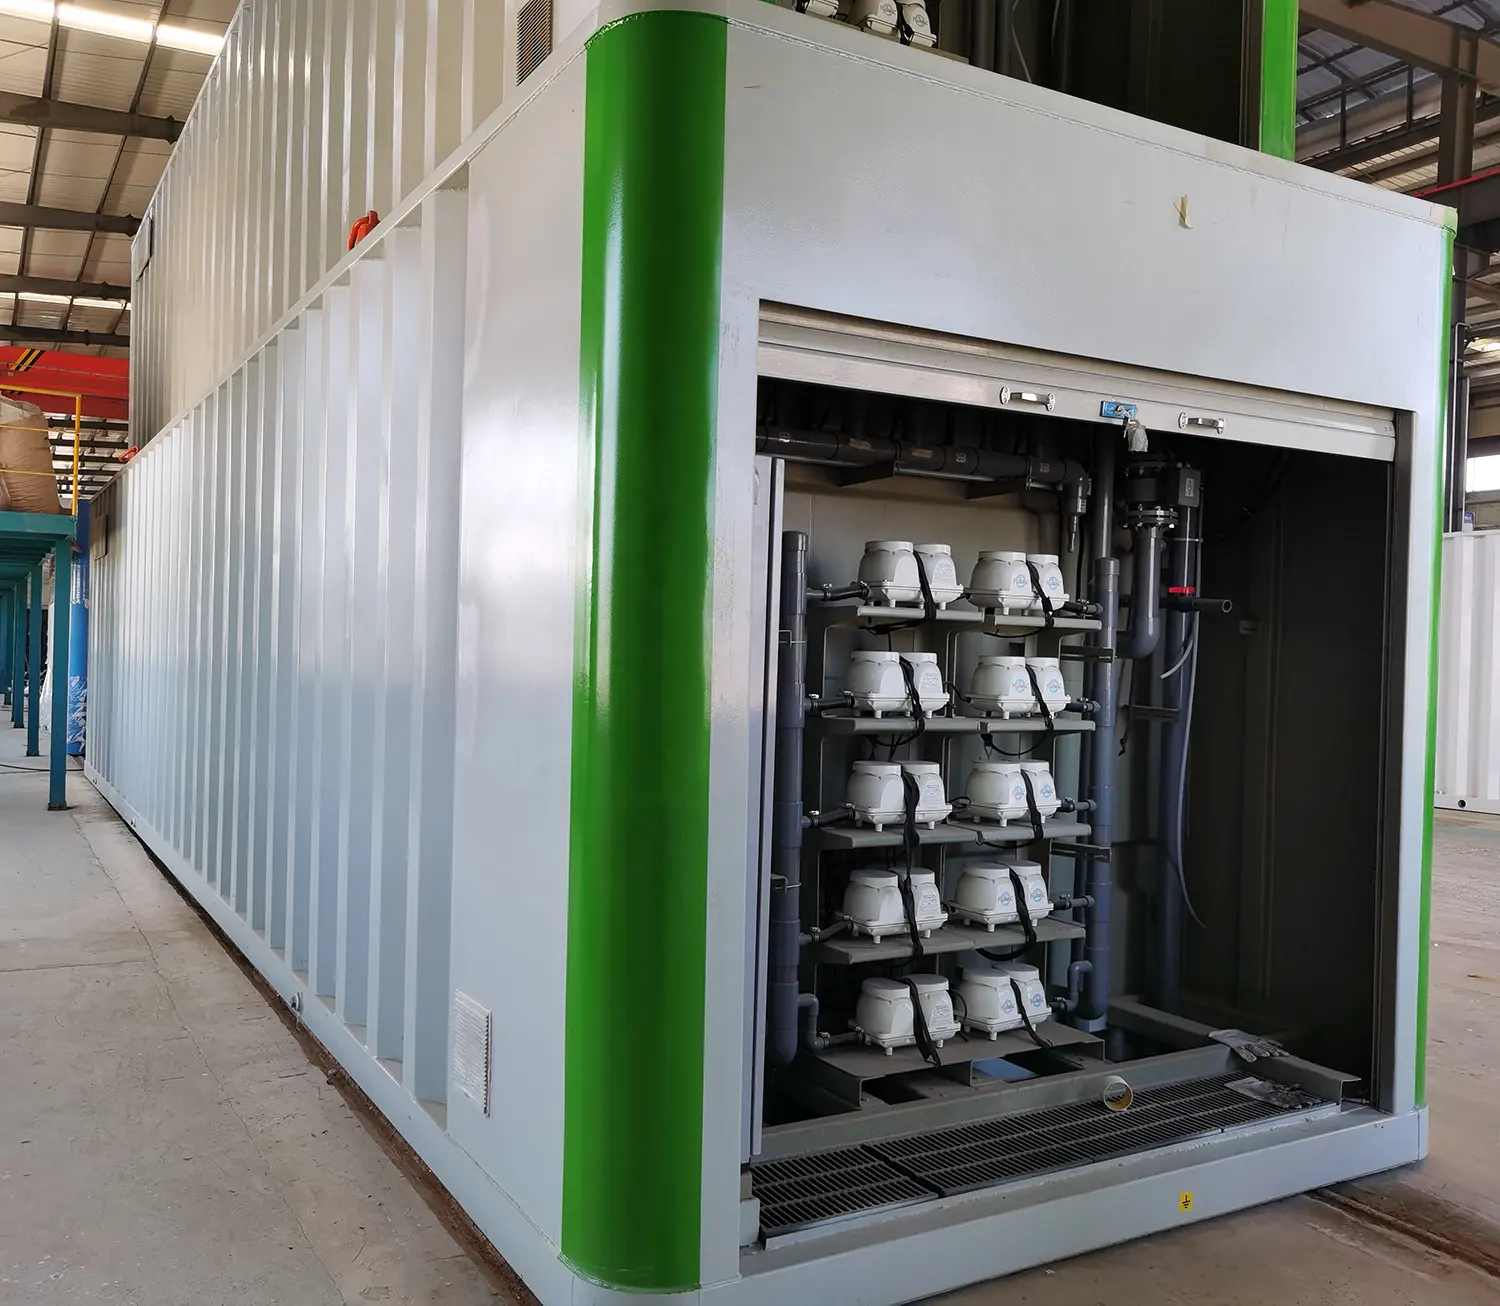 نظام مصنع معالجة مياه الصرف الصحي في حاويات لذبح ومعالجة الدواجن من MBBR